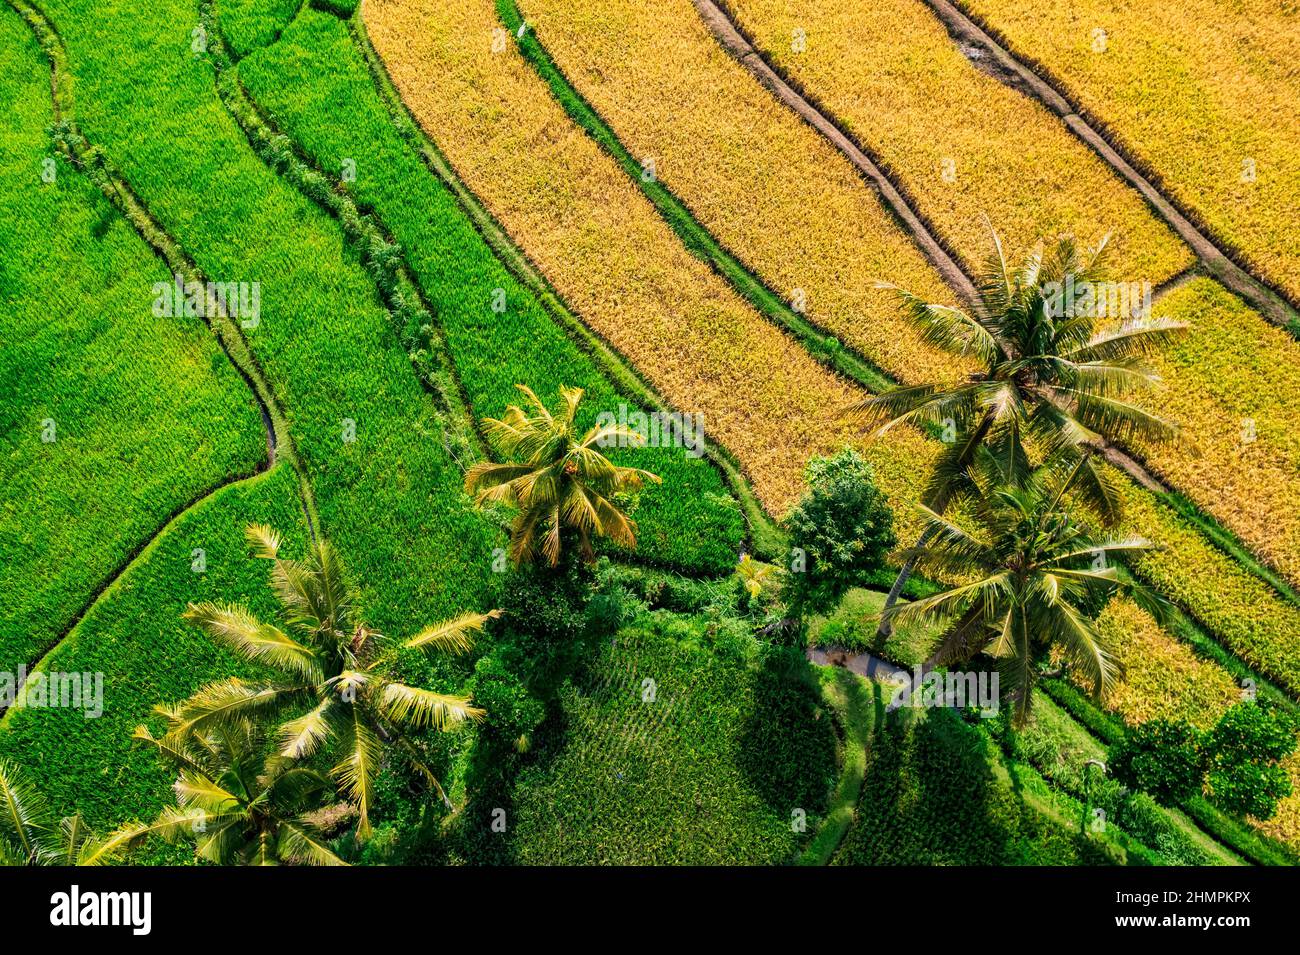 Vue aérienne des rizières tropicales, Lombok, Indonésie Banque D'Images